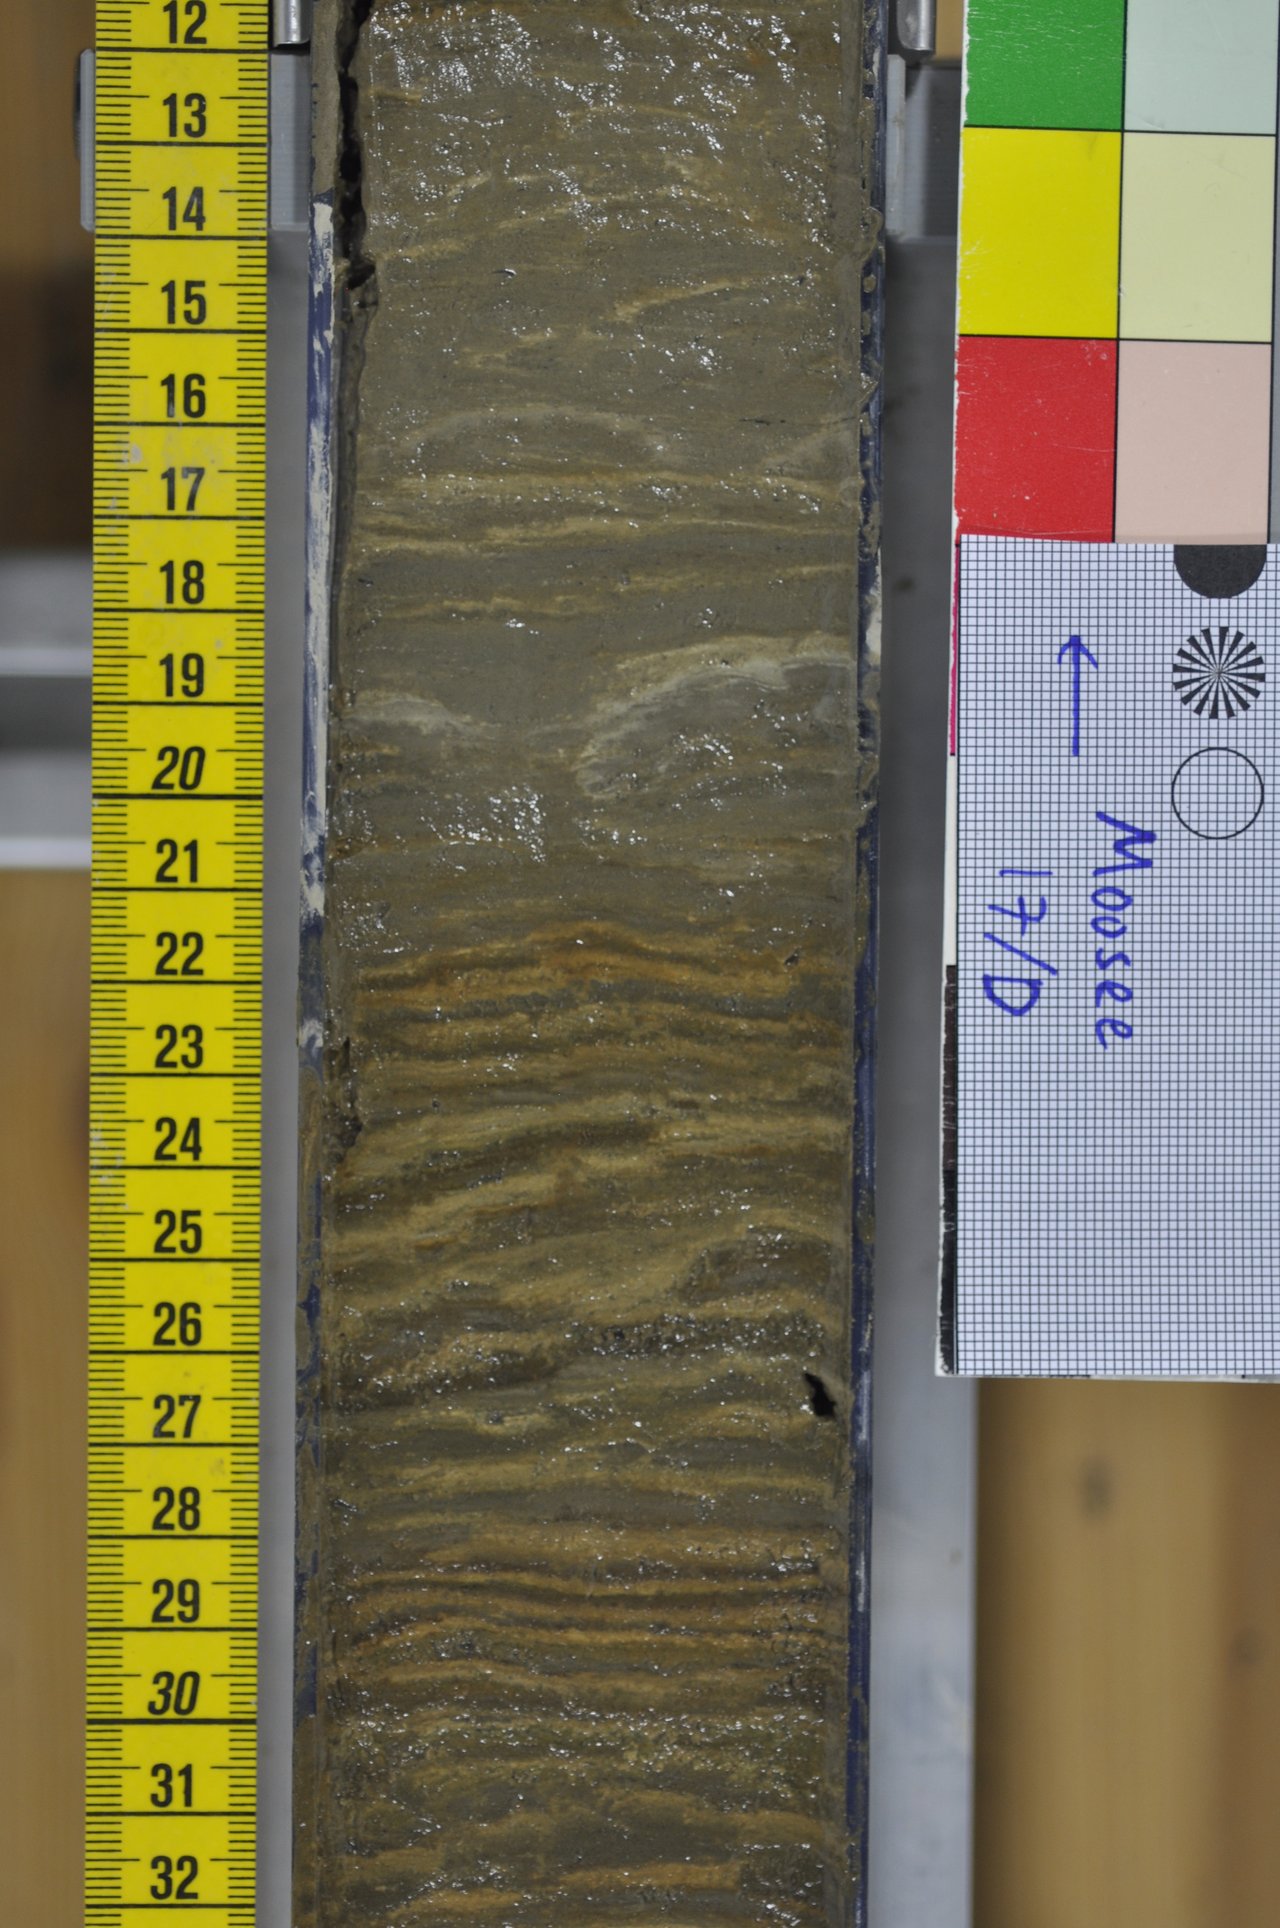 Der aufgeschnittene Sedimentkern zeigt die Schichten, die sich Jahr für Jahr auf dem Boden des Moossees abgelagert haben.